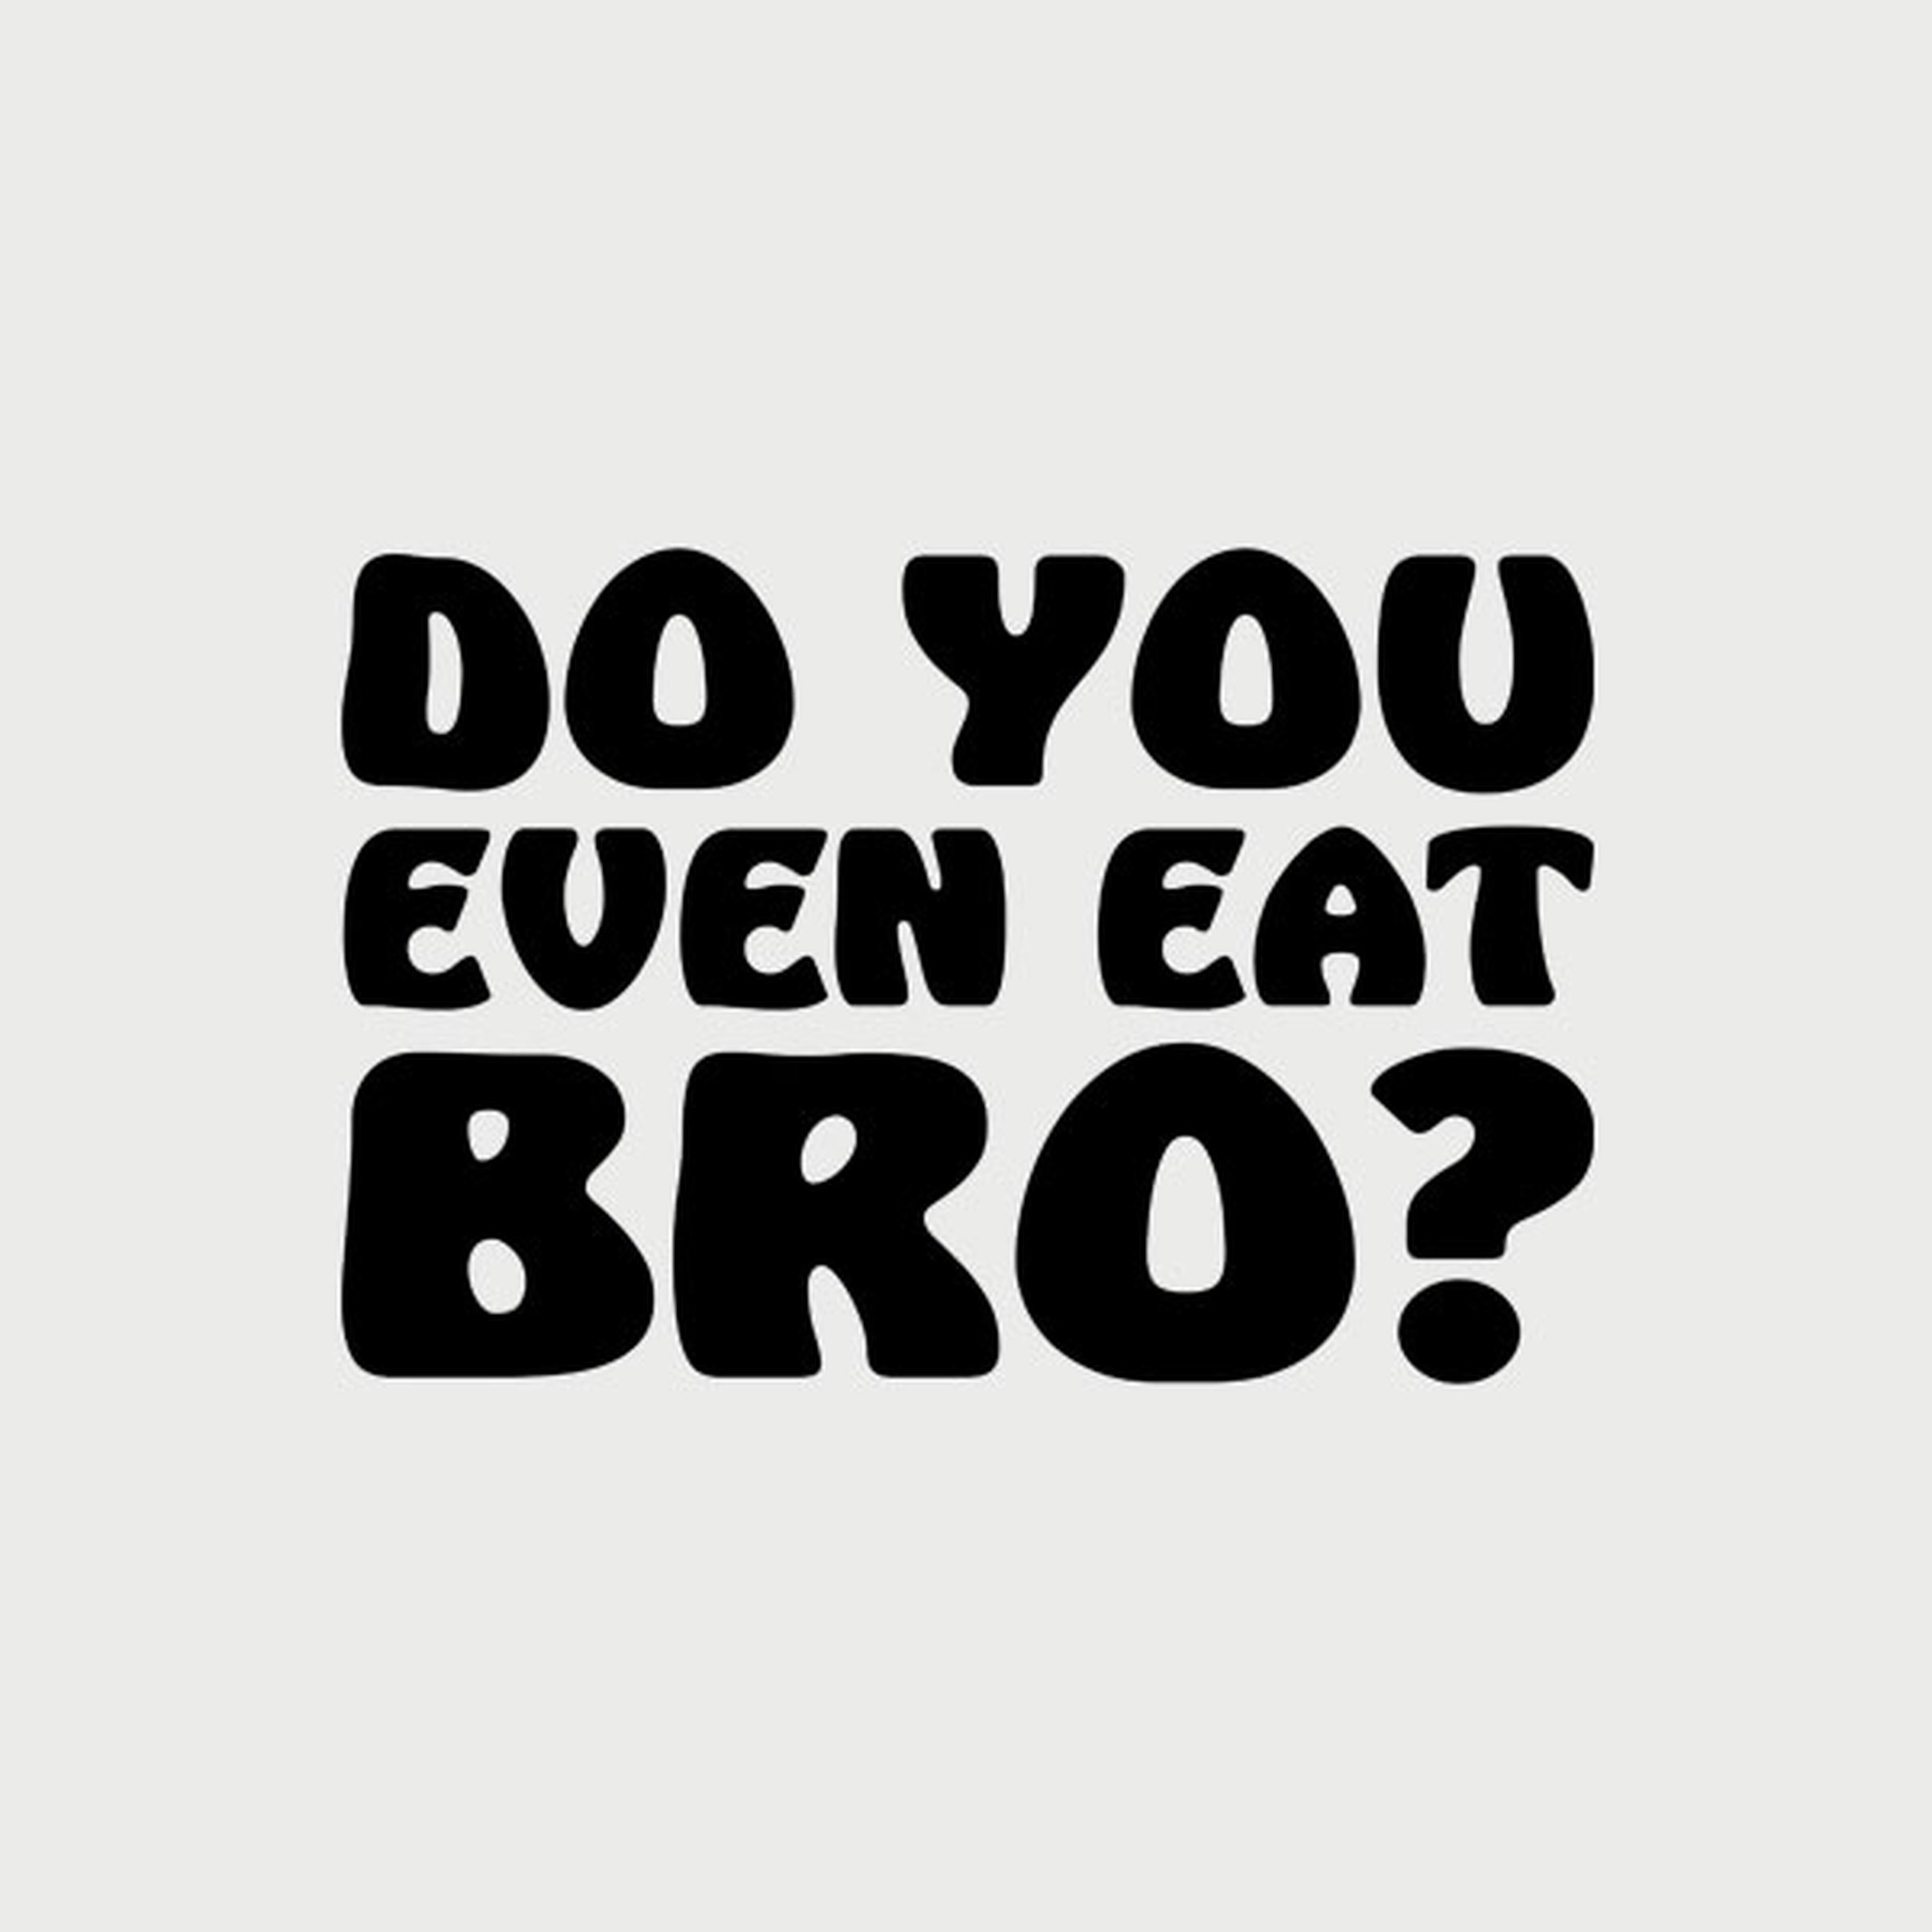 Do you even eat bro?